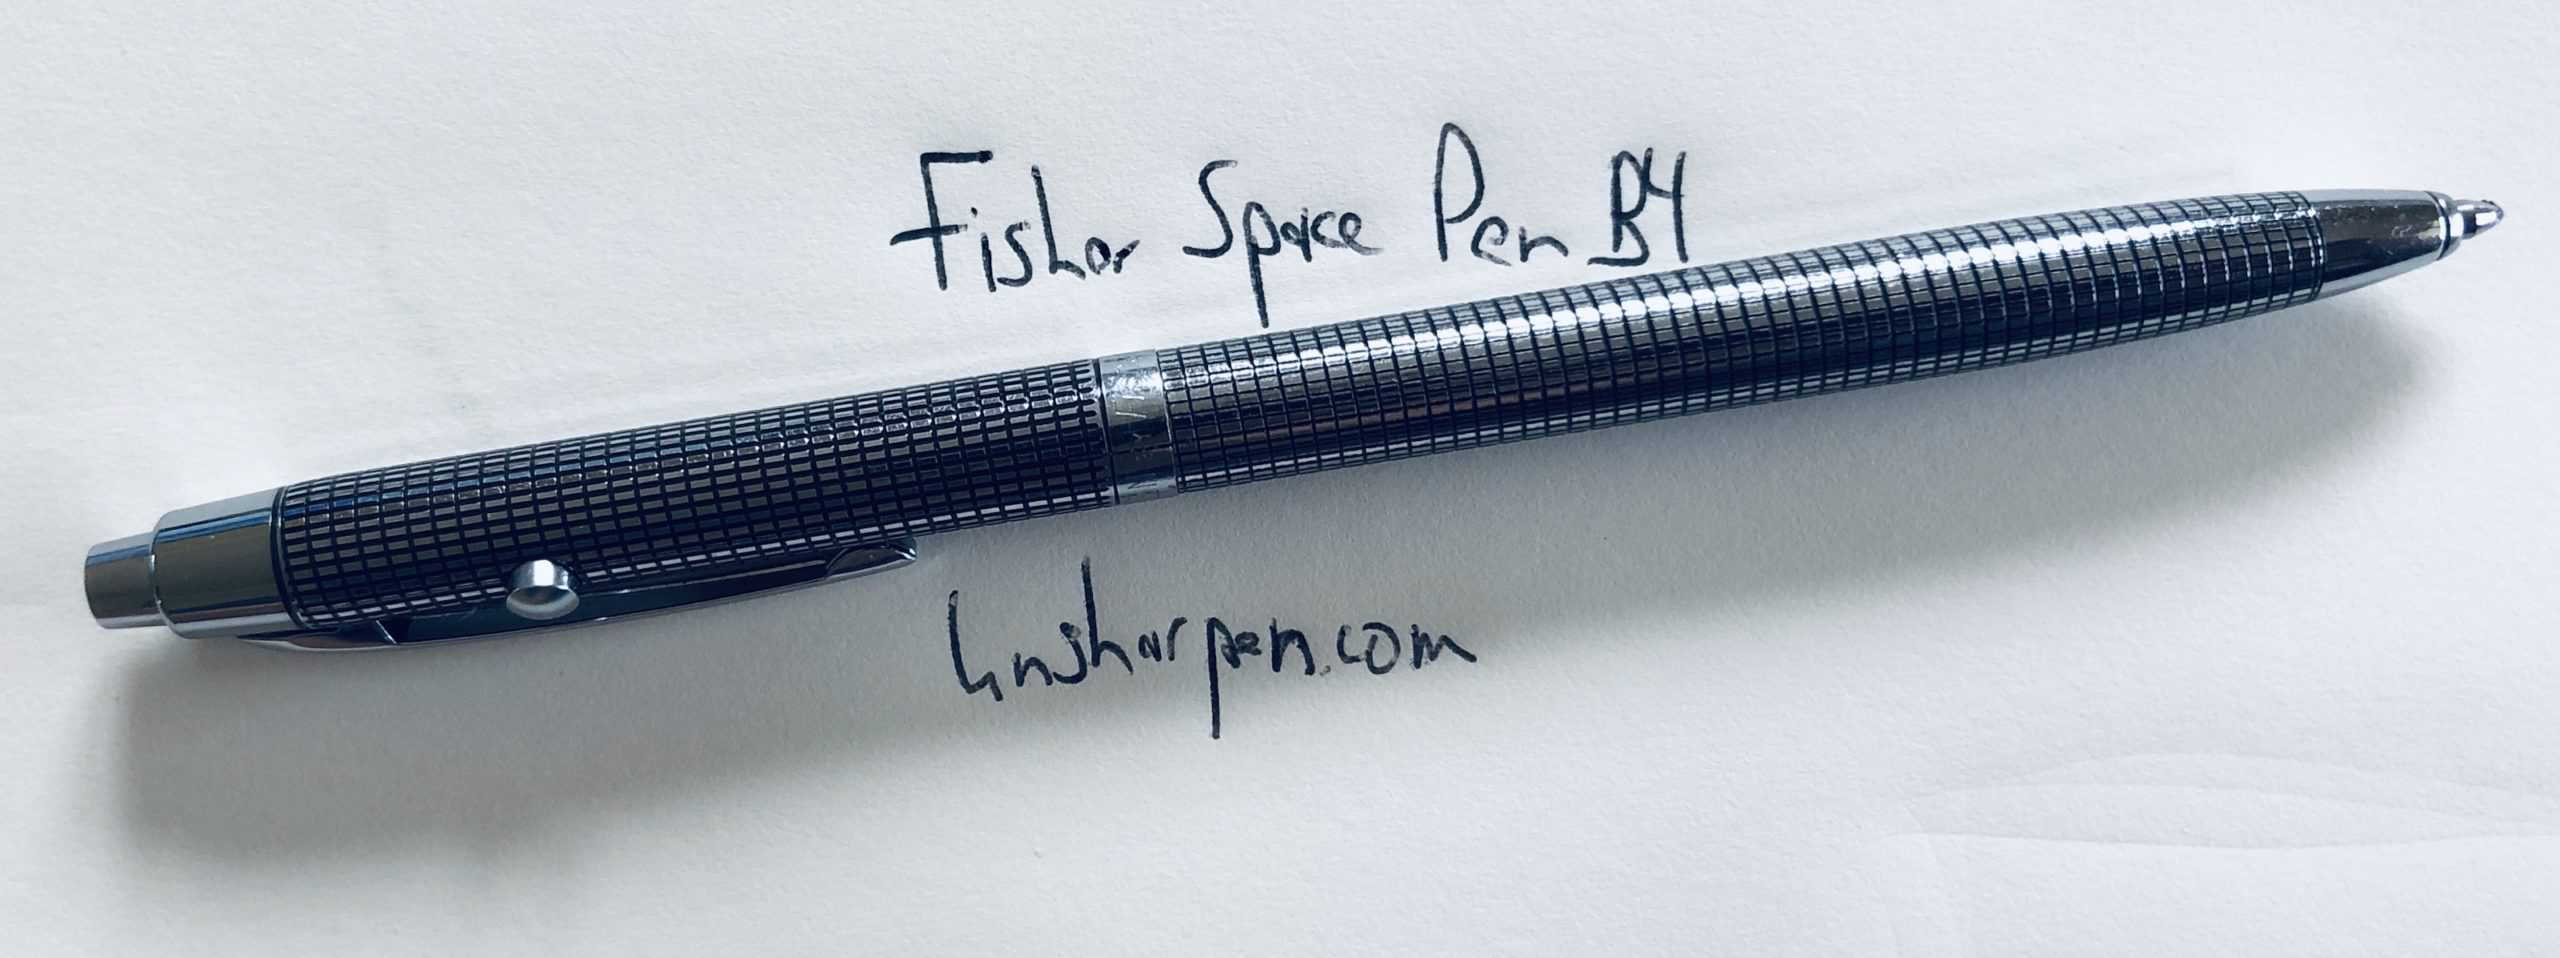 Ersatzmine FISHER Spacetec Spacepen Space Pen